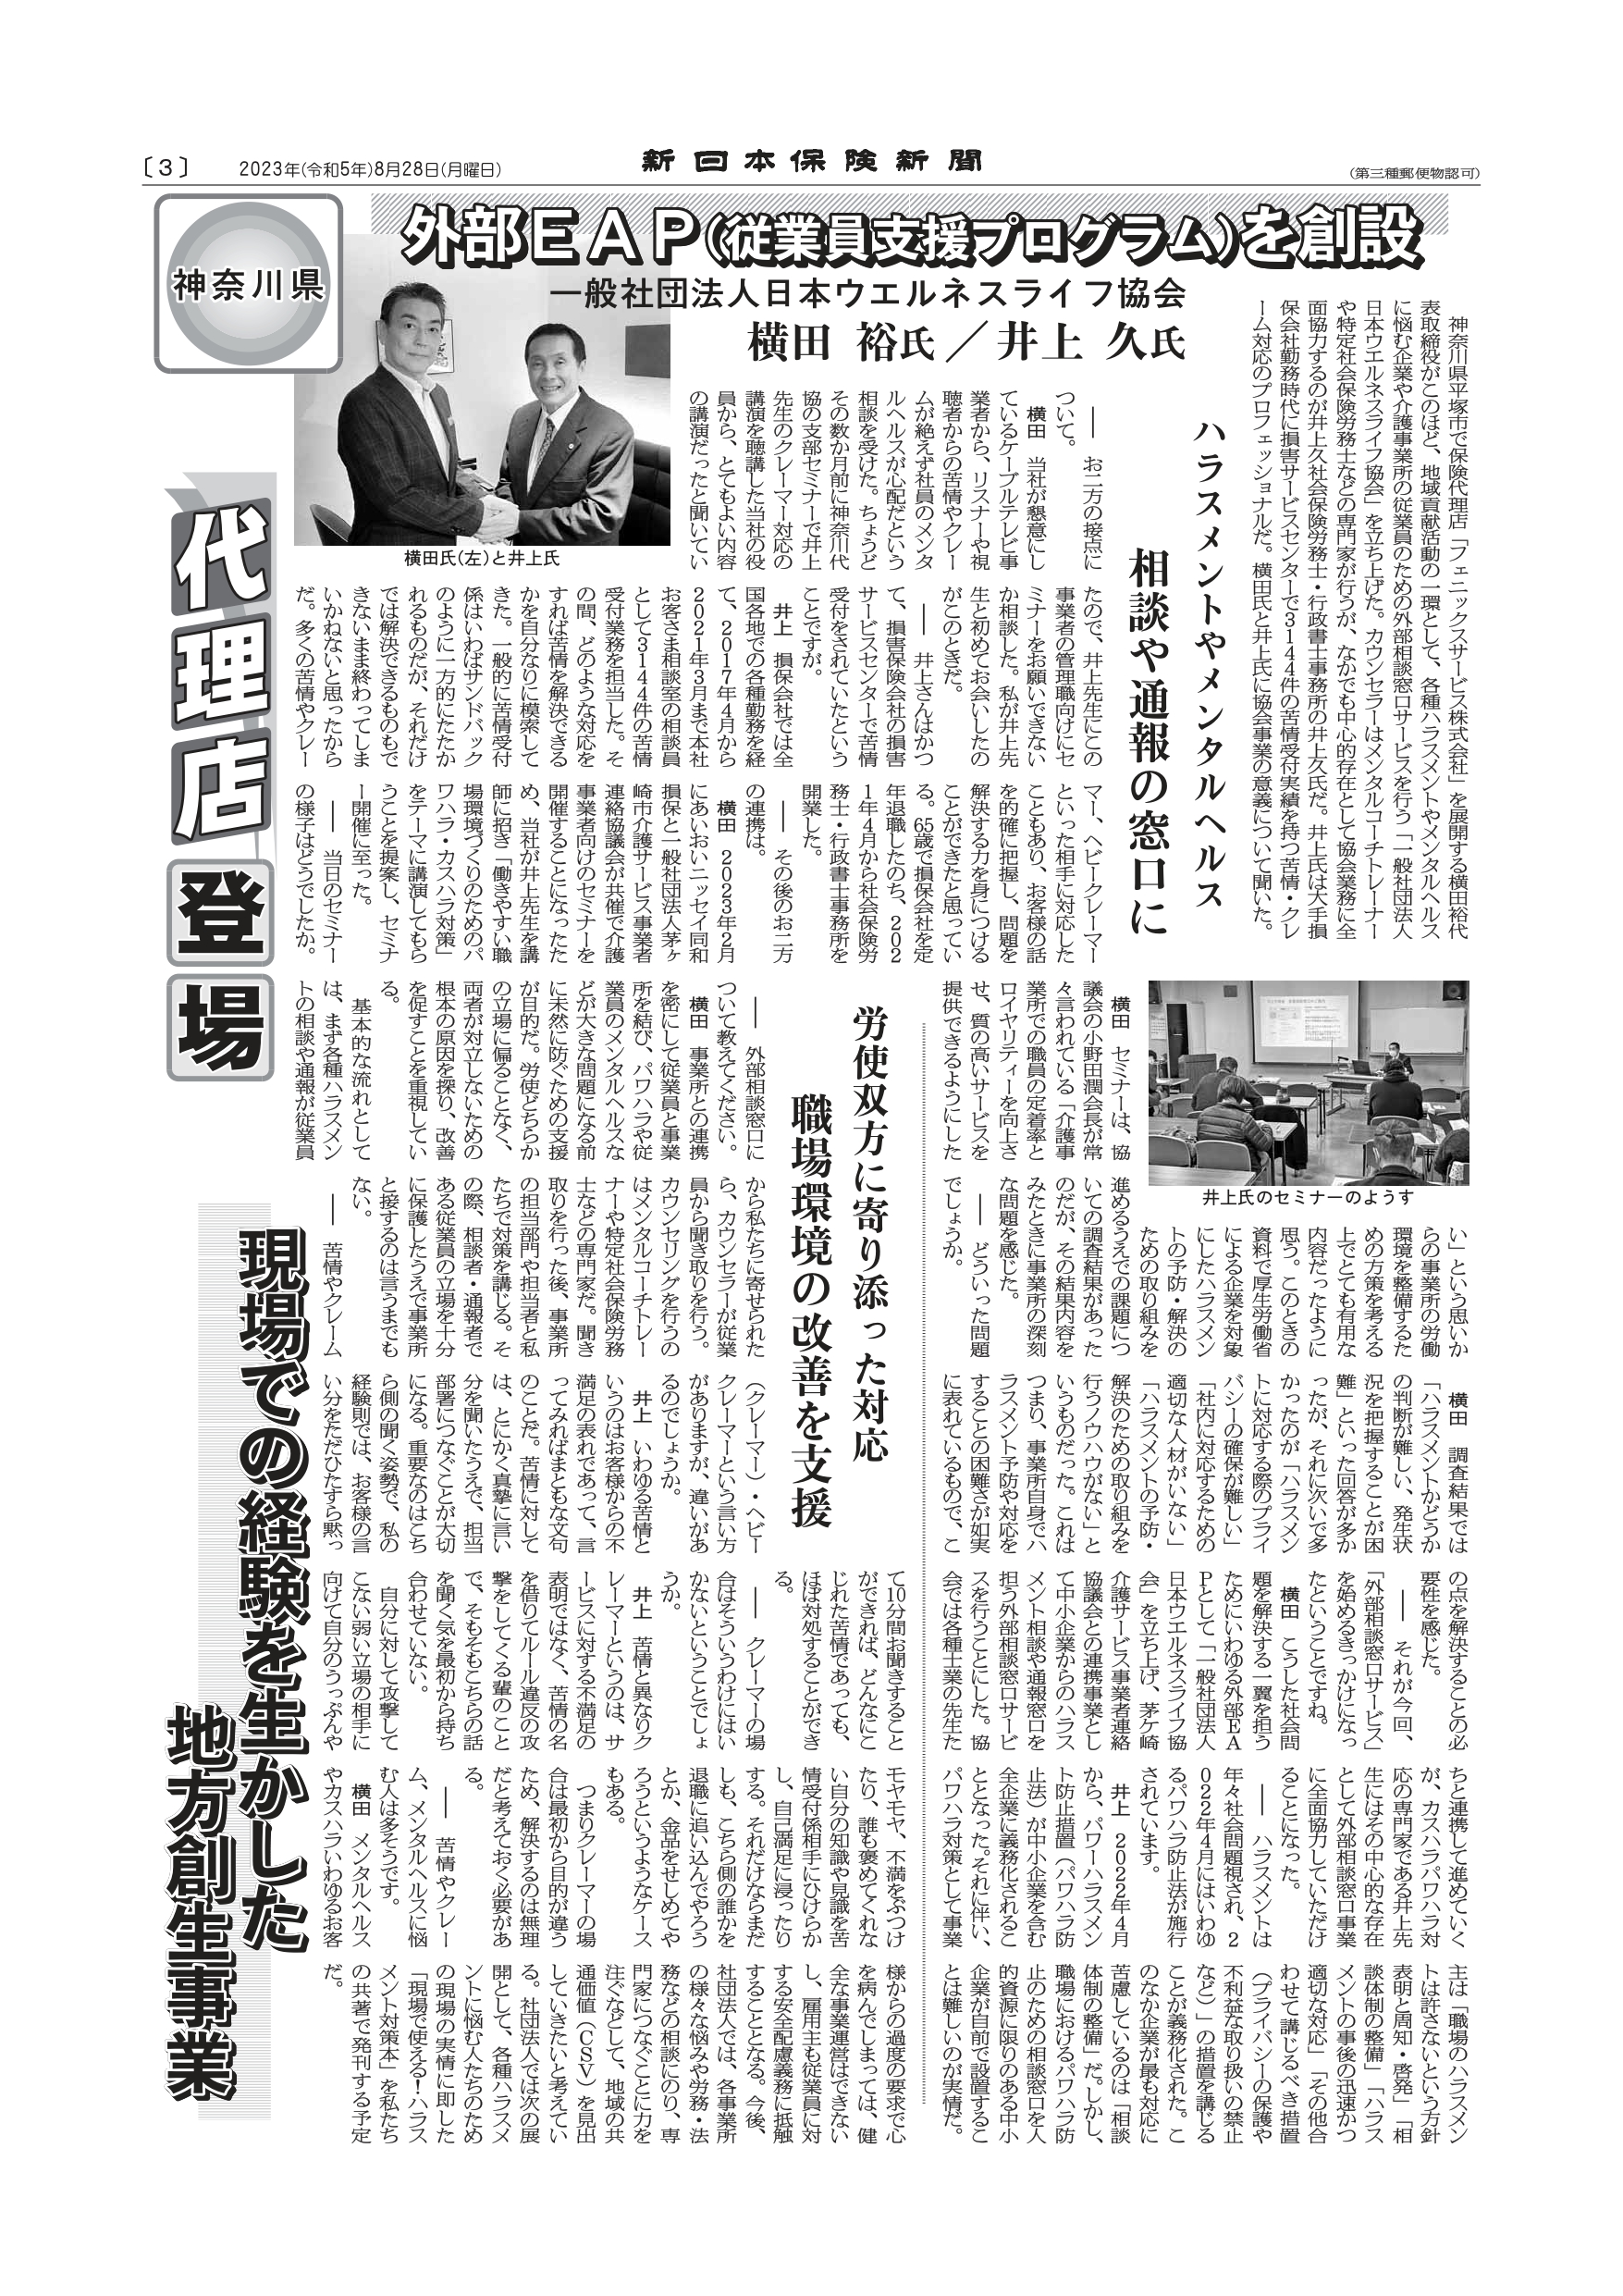 新日本保険新聞